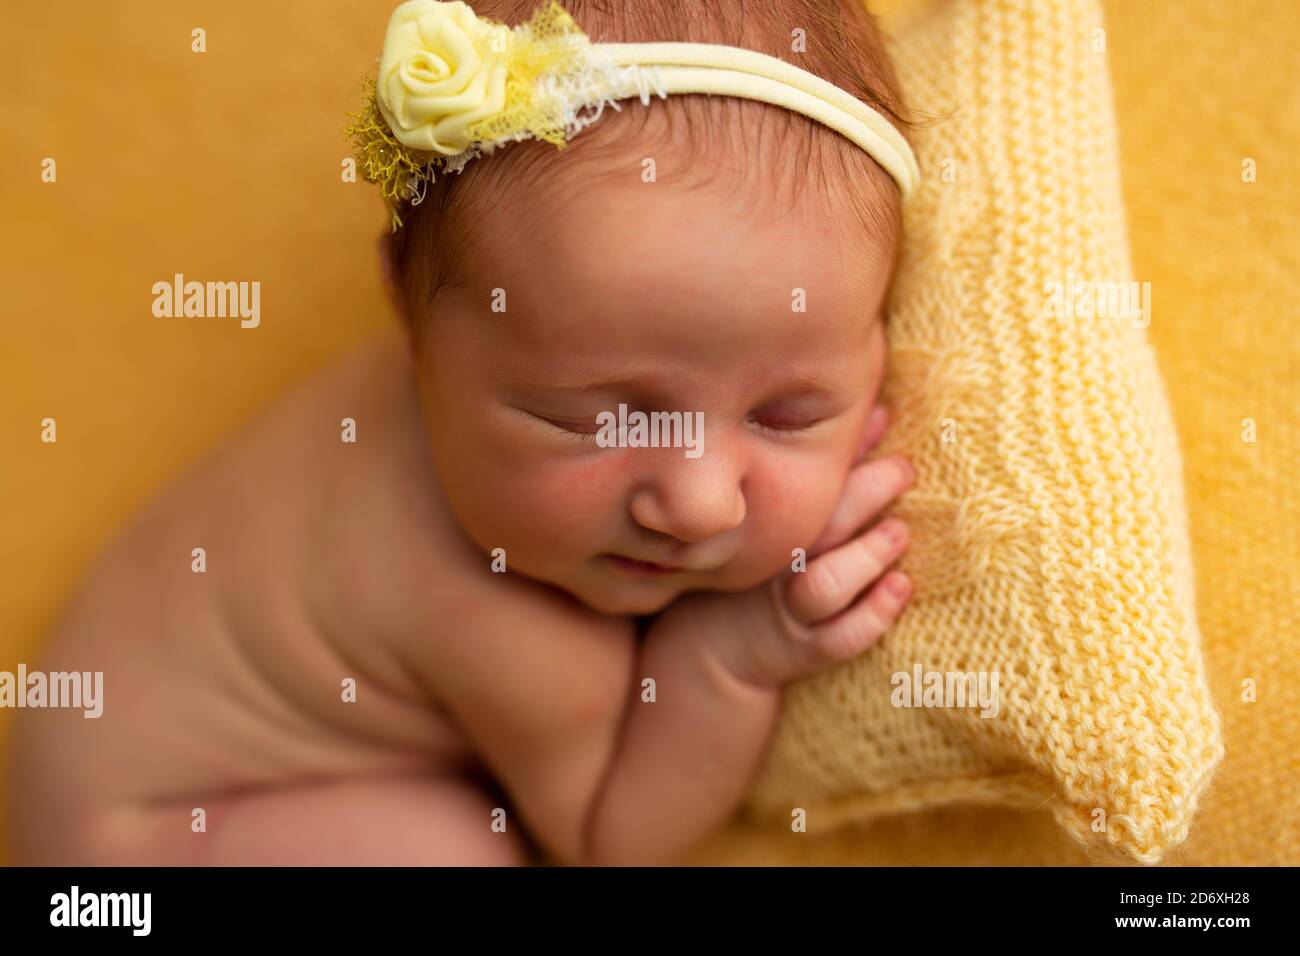 Bébé nouveau-né mignon se nouant sur un oreiller sur une couverture jaune Banque D'Images